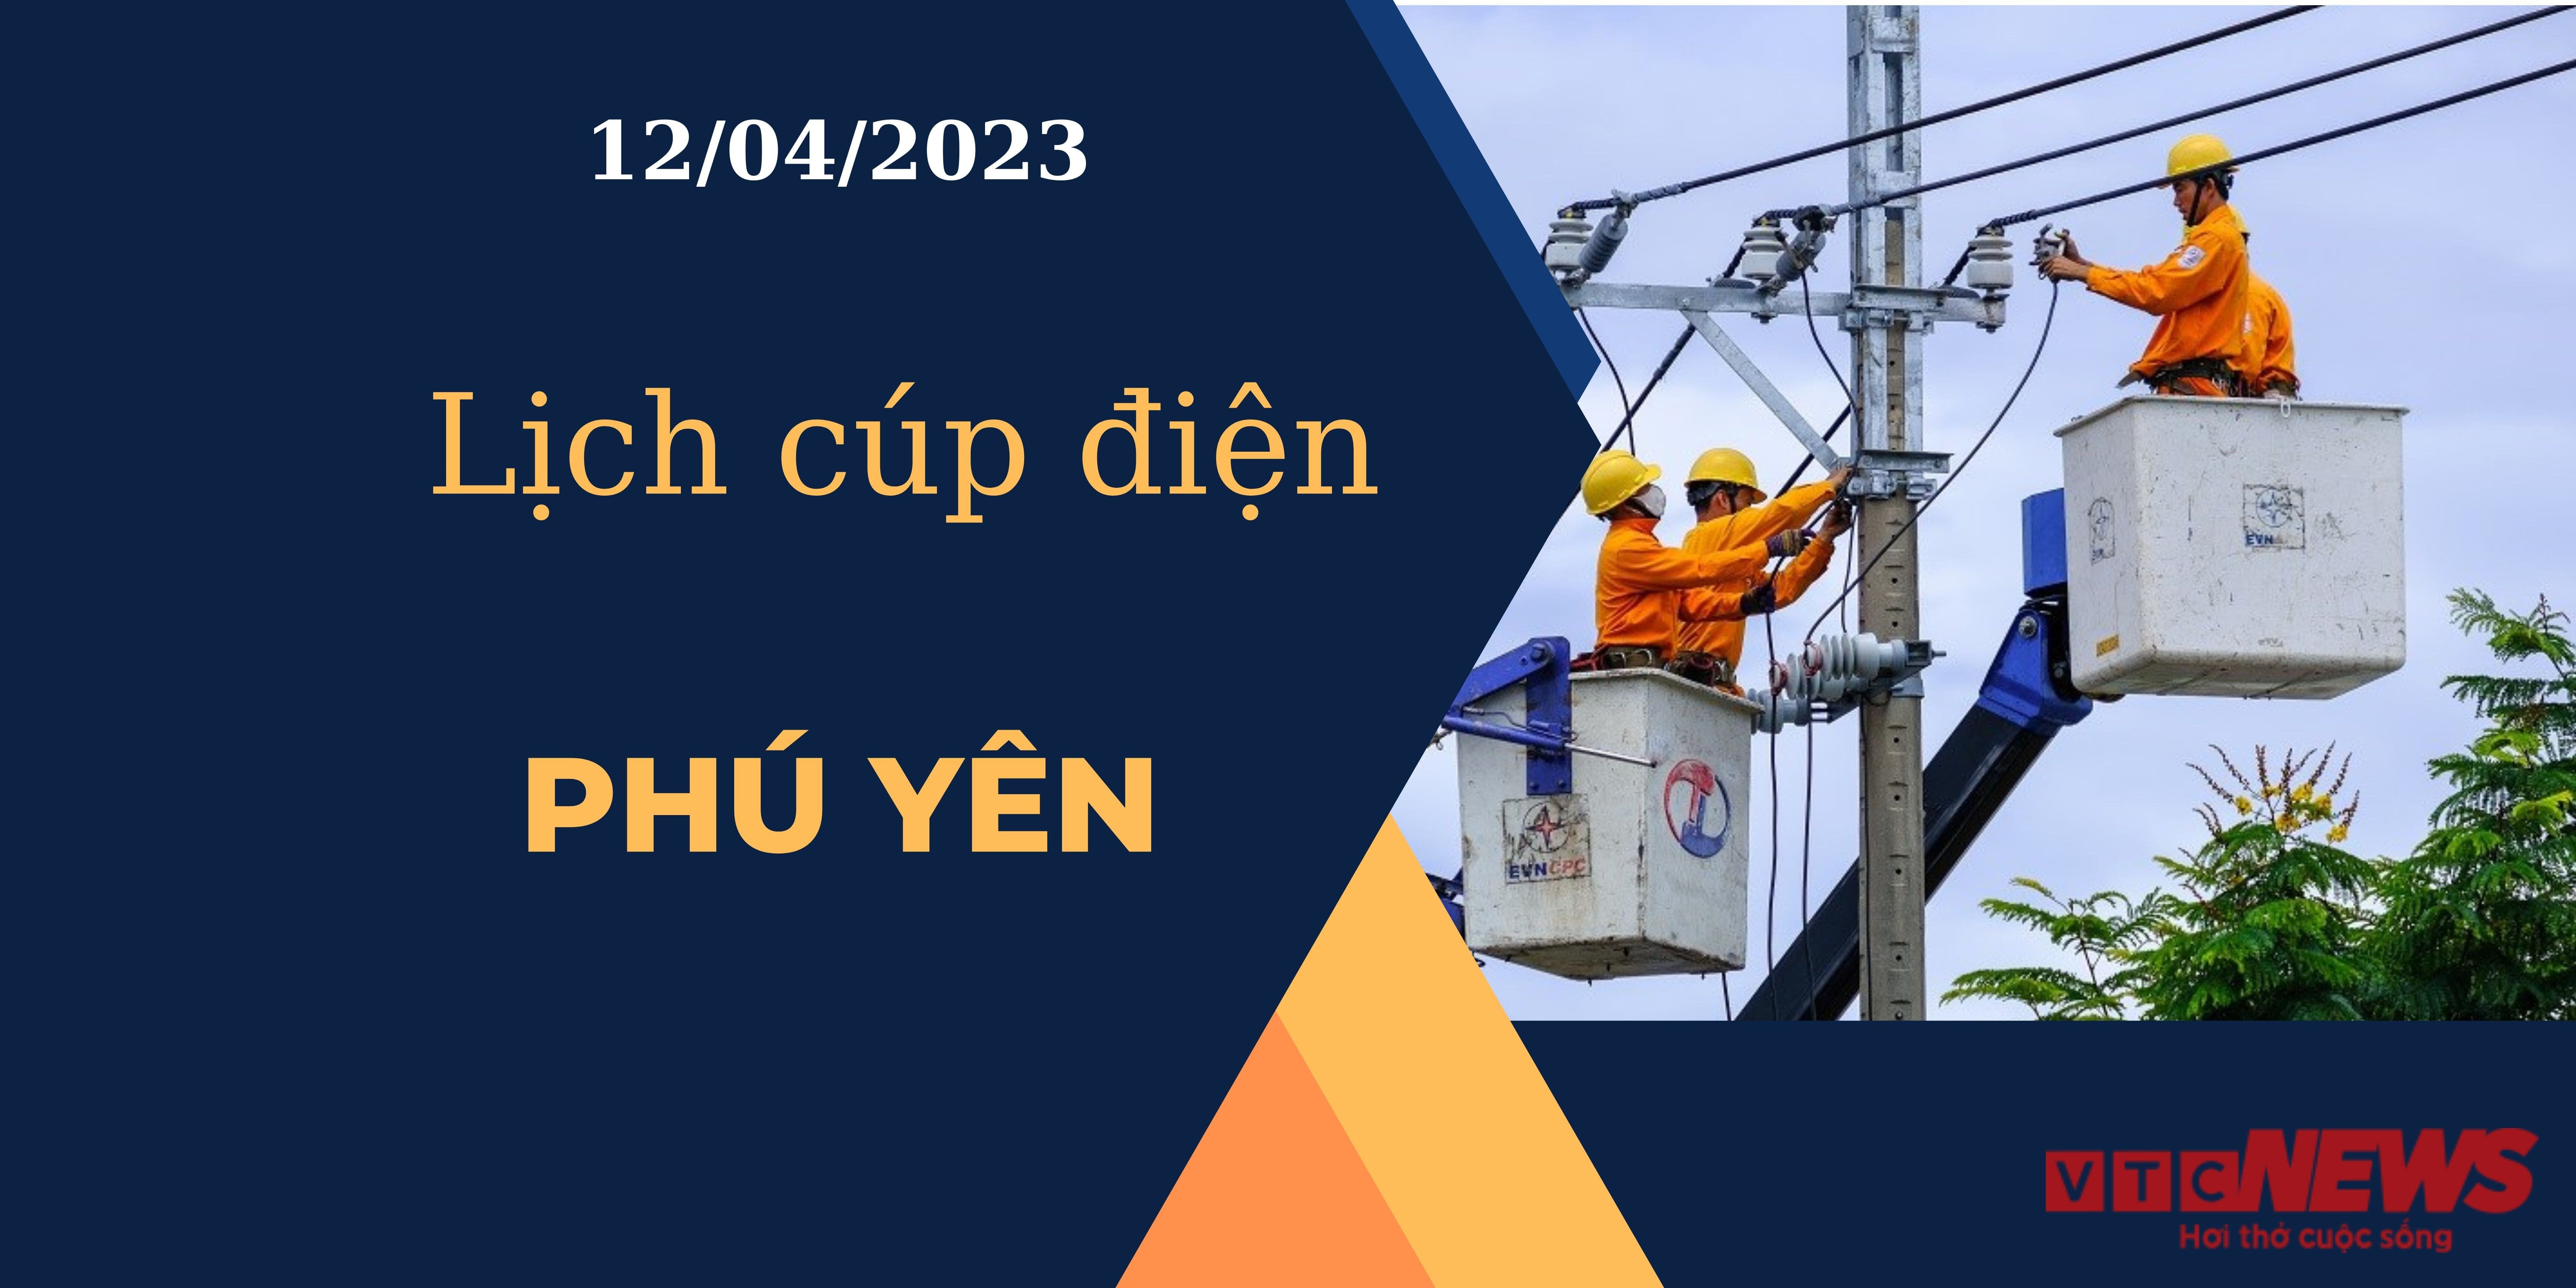 Lịch cúp điện hôm nay tại Phú Yên ngày 12/04/2023 - 1